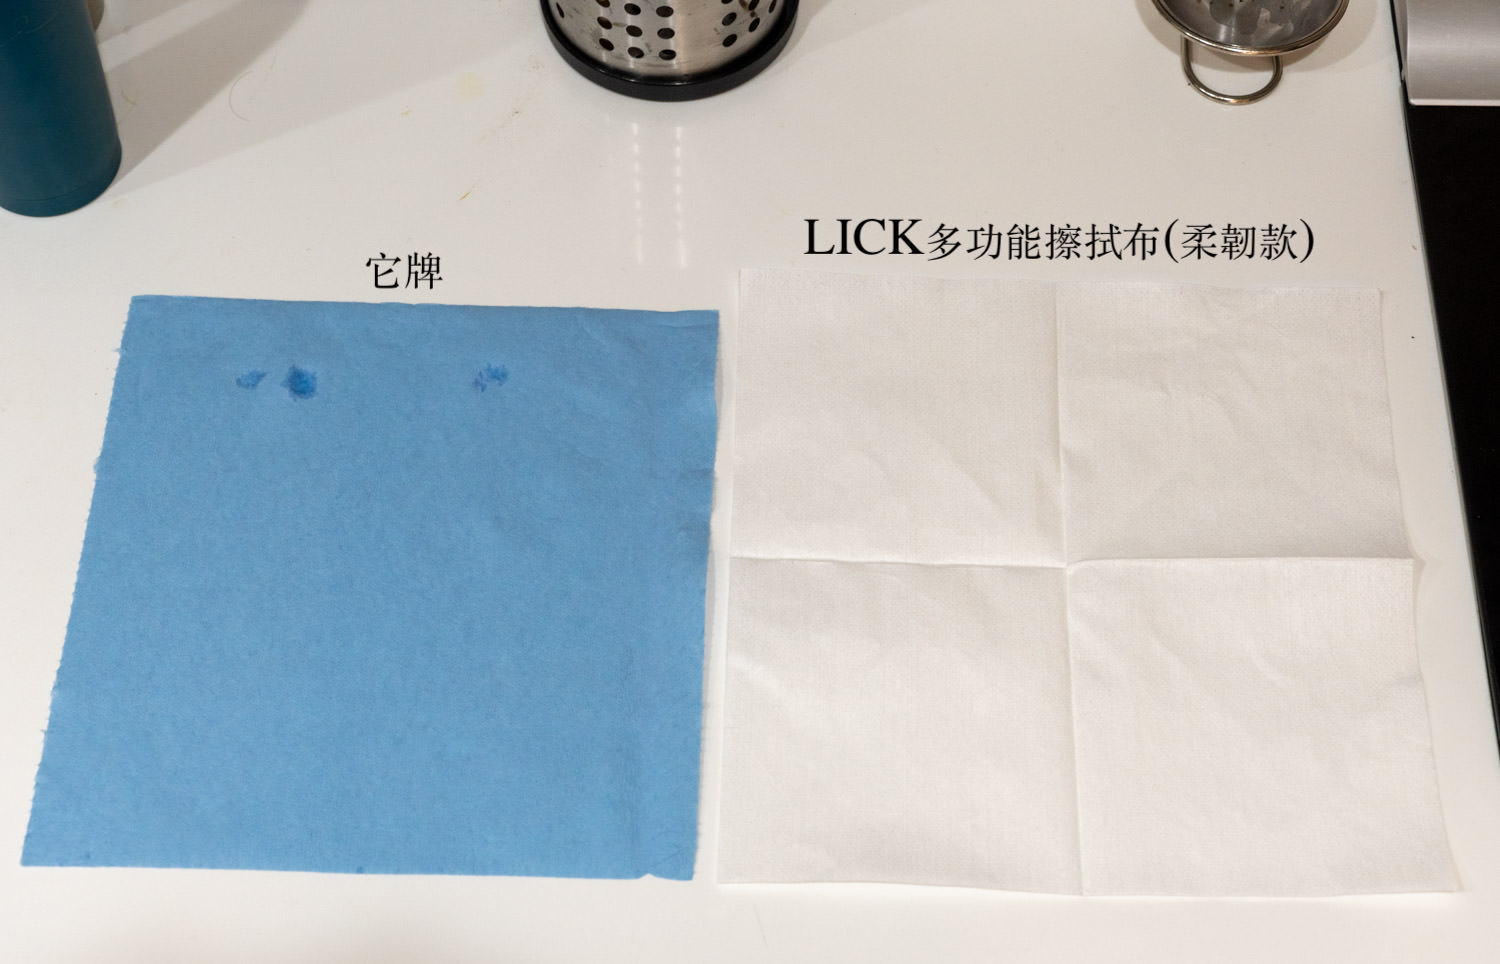 LICK多功能擦拭布 柔韌款 00841